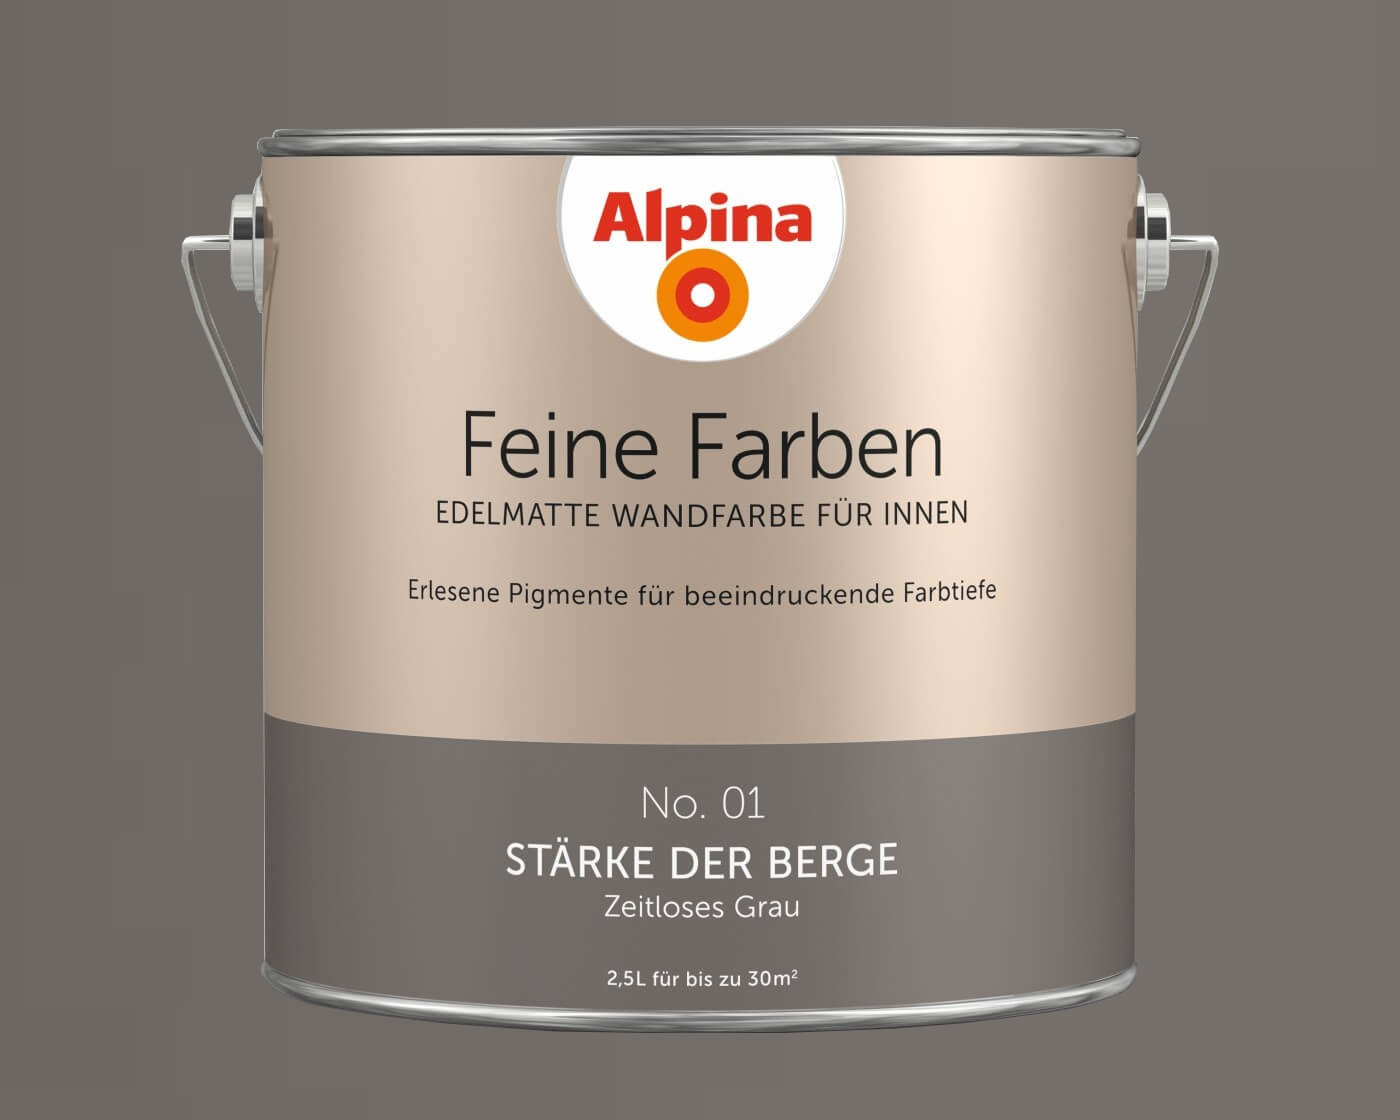 Alpina Feine Farben Edelmatte Wandfarbe Fur Innen Alle Farbtone 2 5l Dose